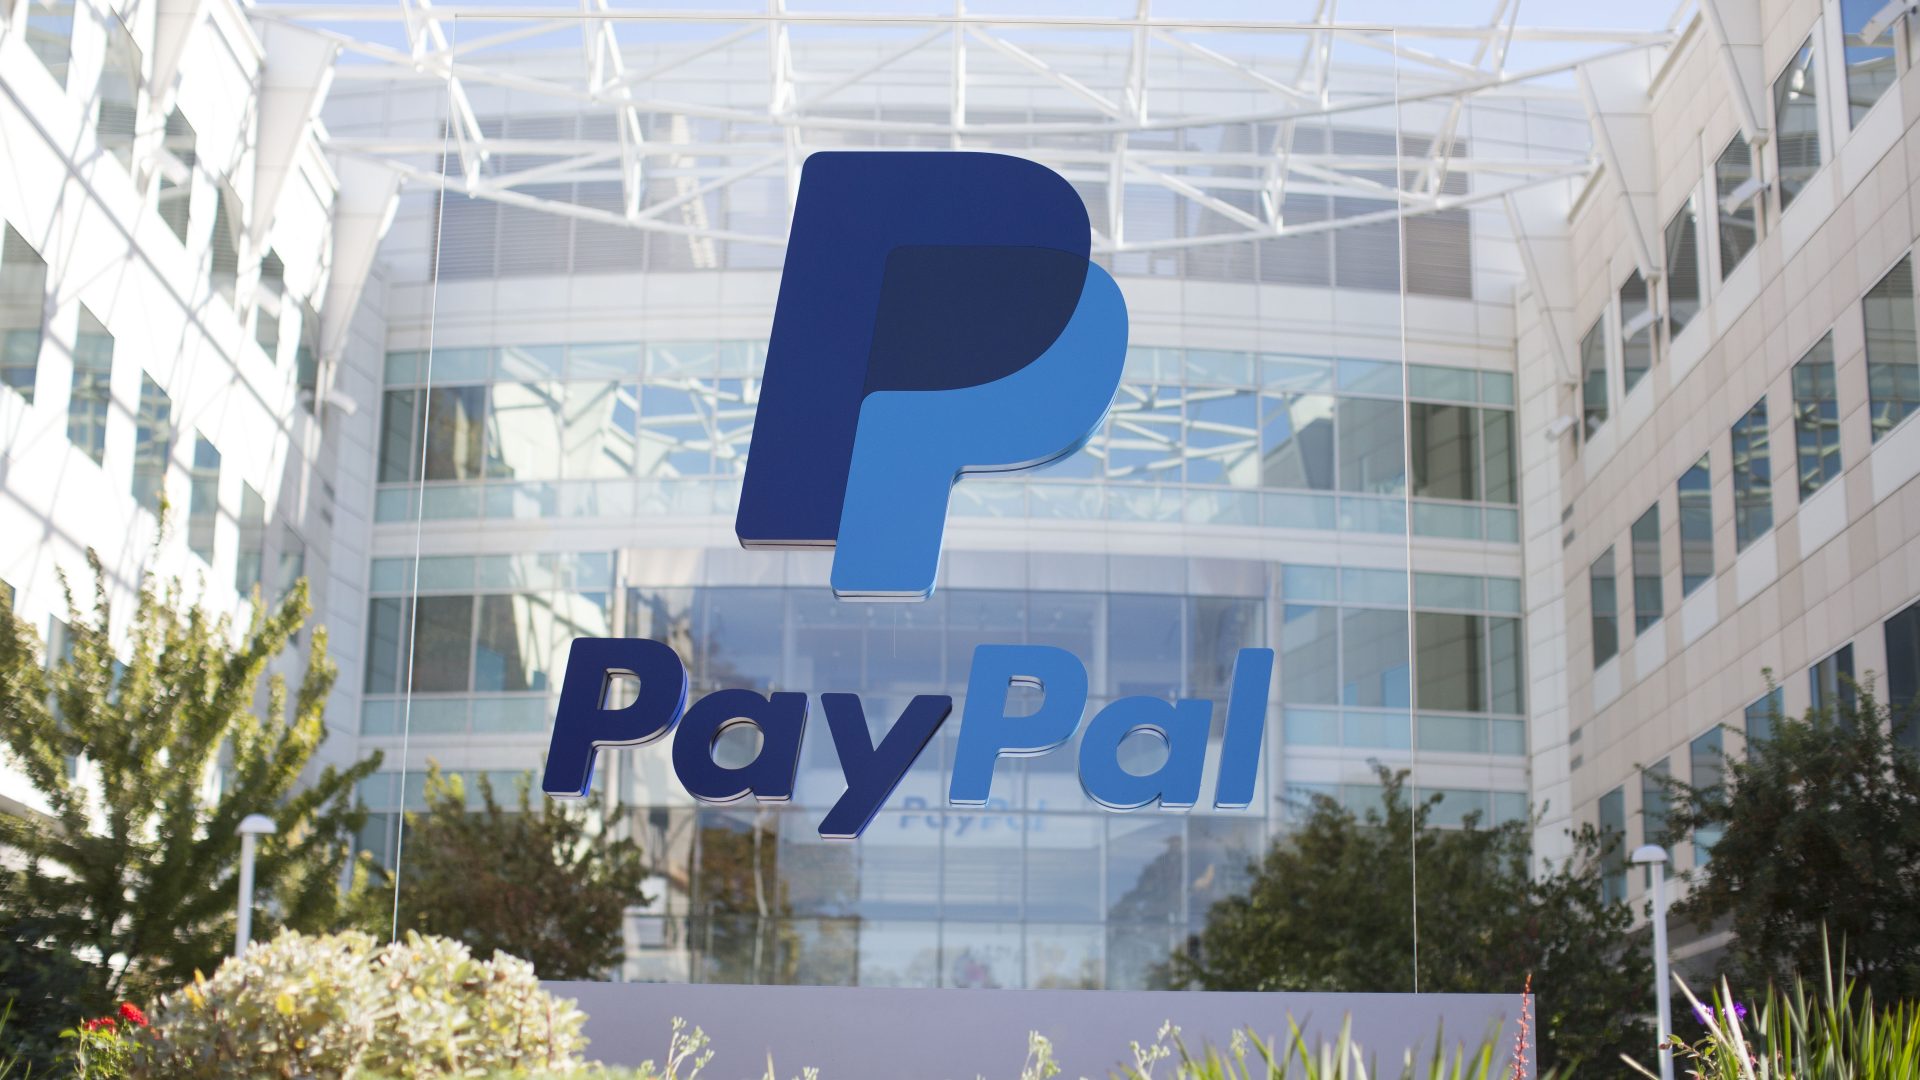 حصول باي بال PayPal على موافقة هيئة الرقابة المالية (FCA) للعملات المشفرة يدفع بنك إنجلترا BoE لتنظيم العملات المستقرة